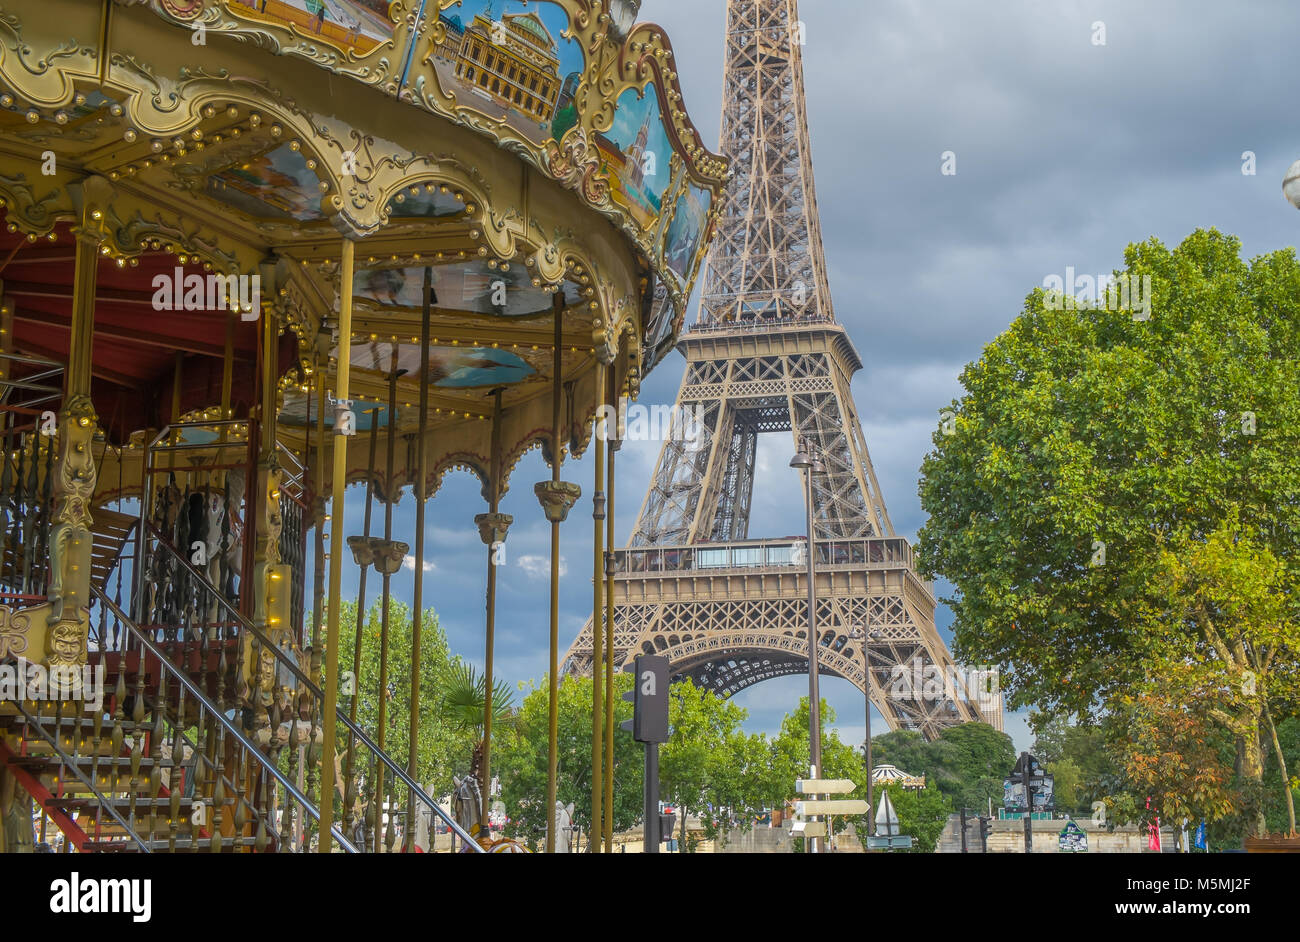 Carrousel de la Tour Eiffel, Paris, France Banque D'Images